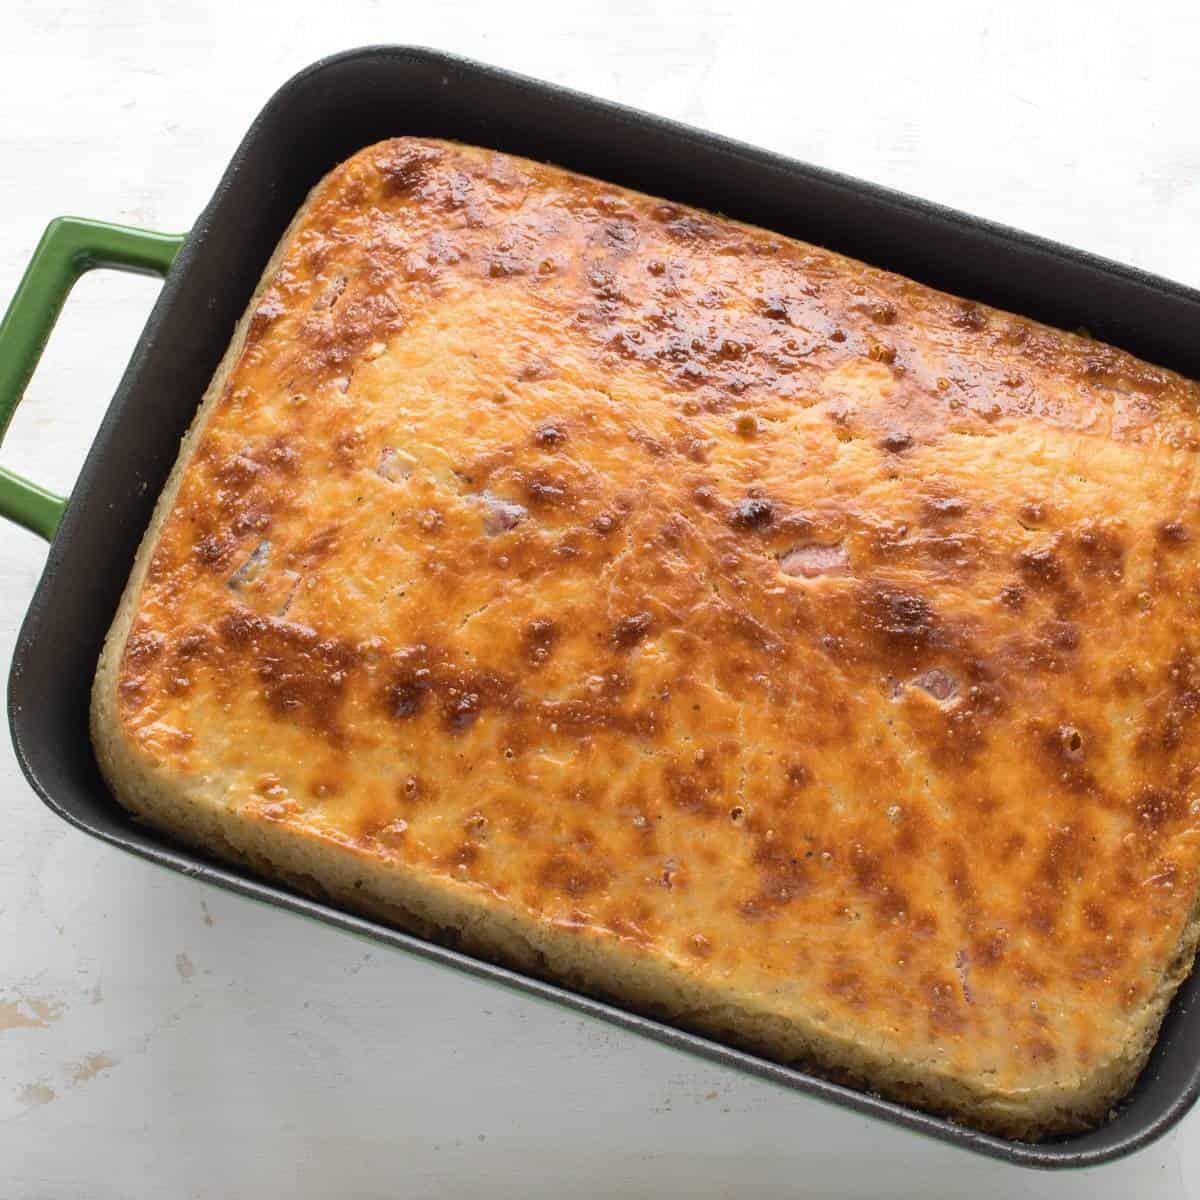 Savory potato cake baked in a rectangular sheet pan.